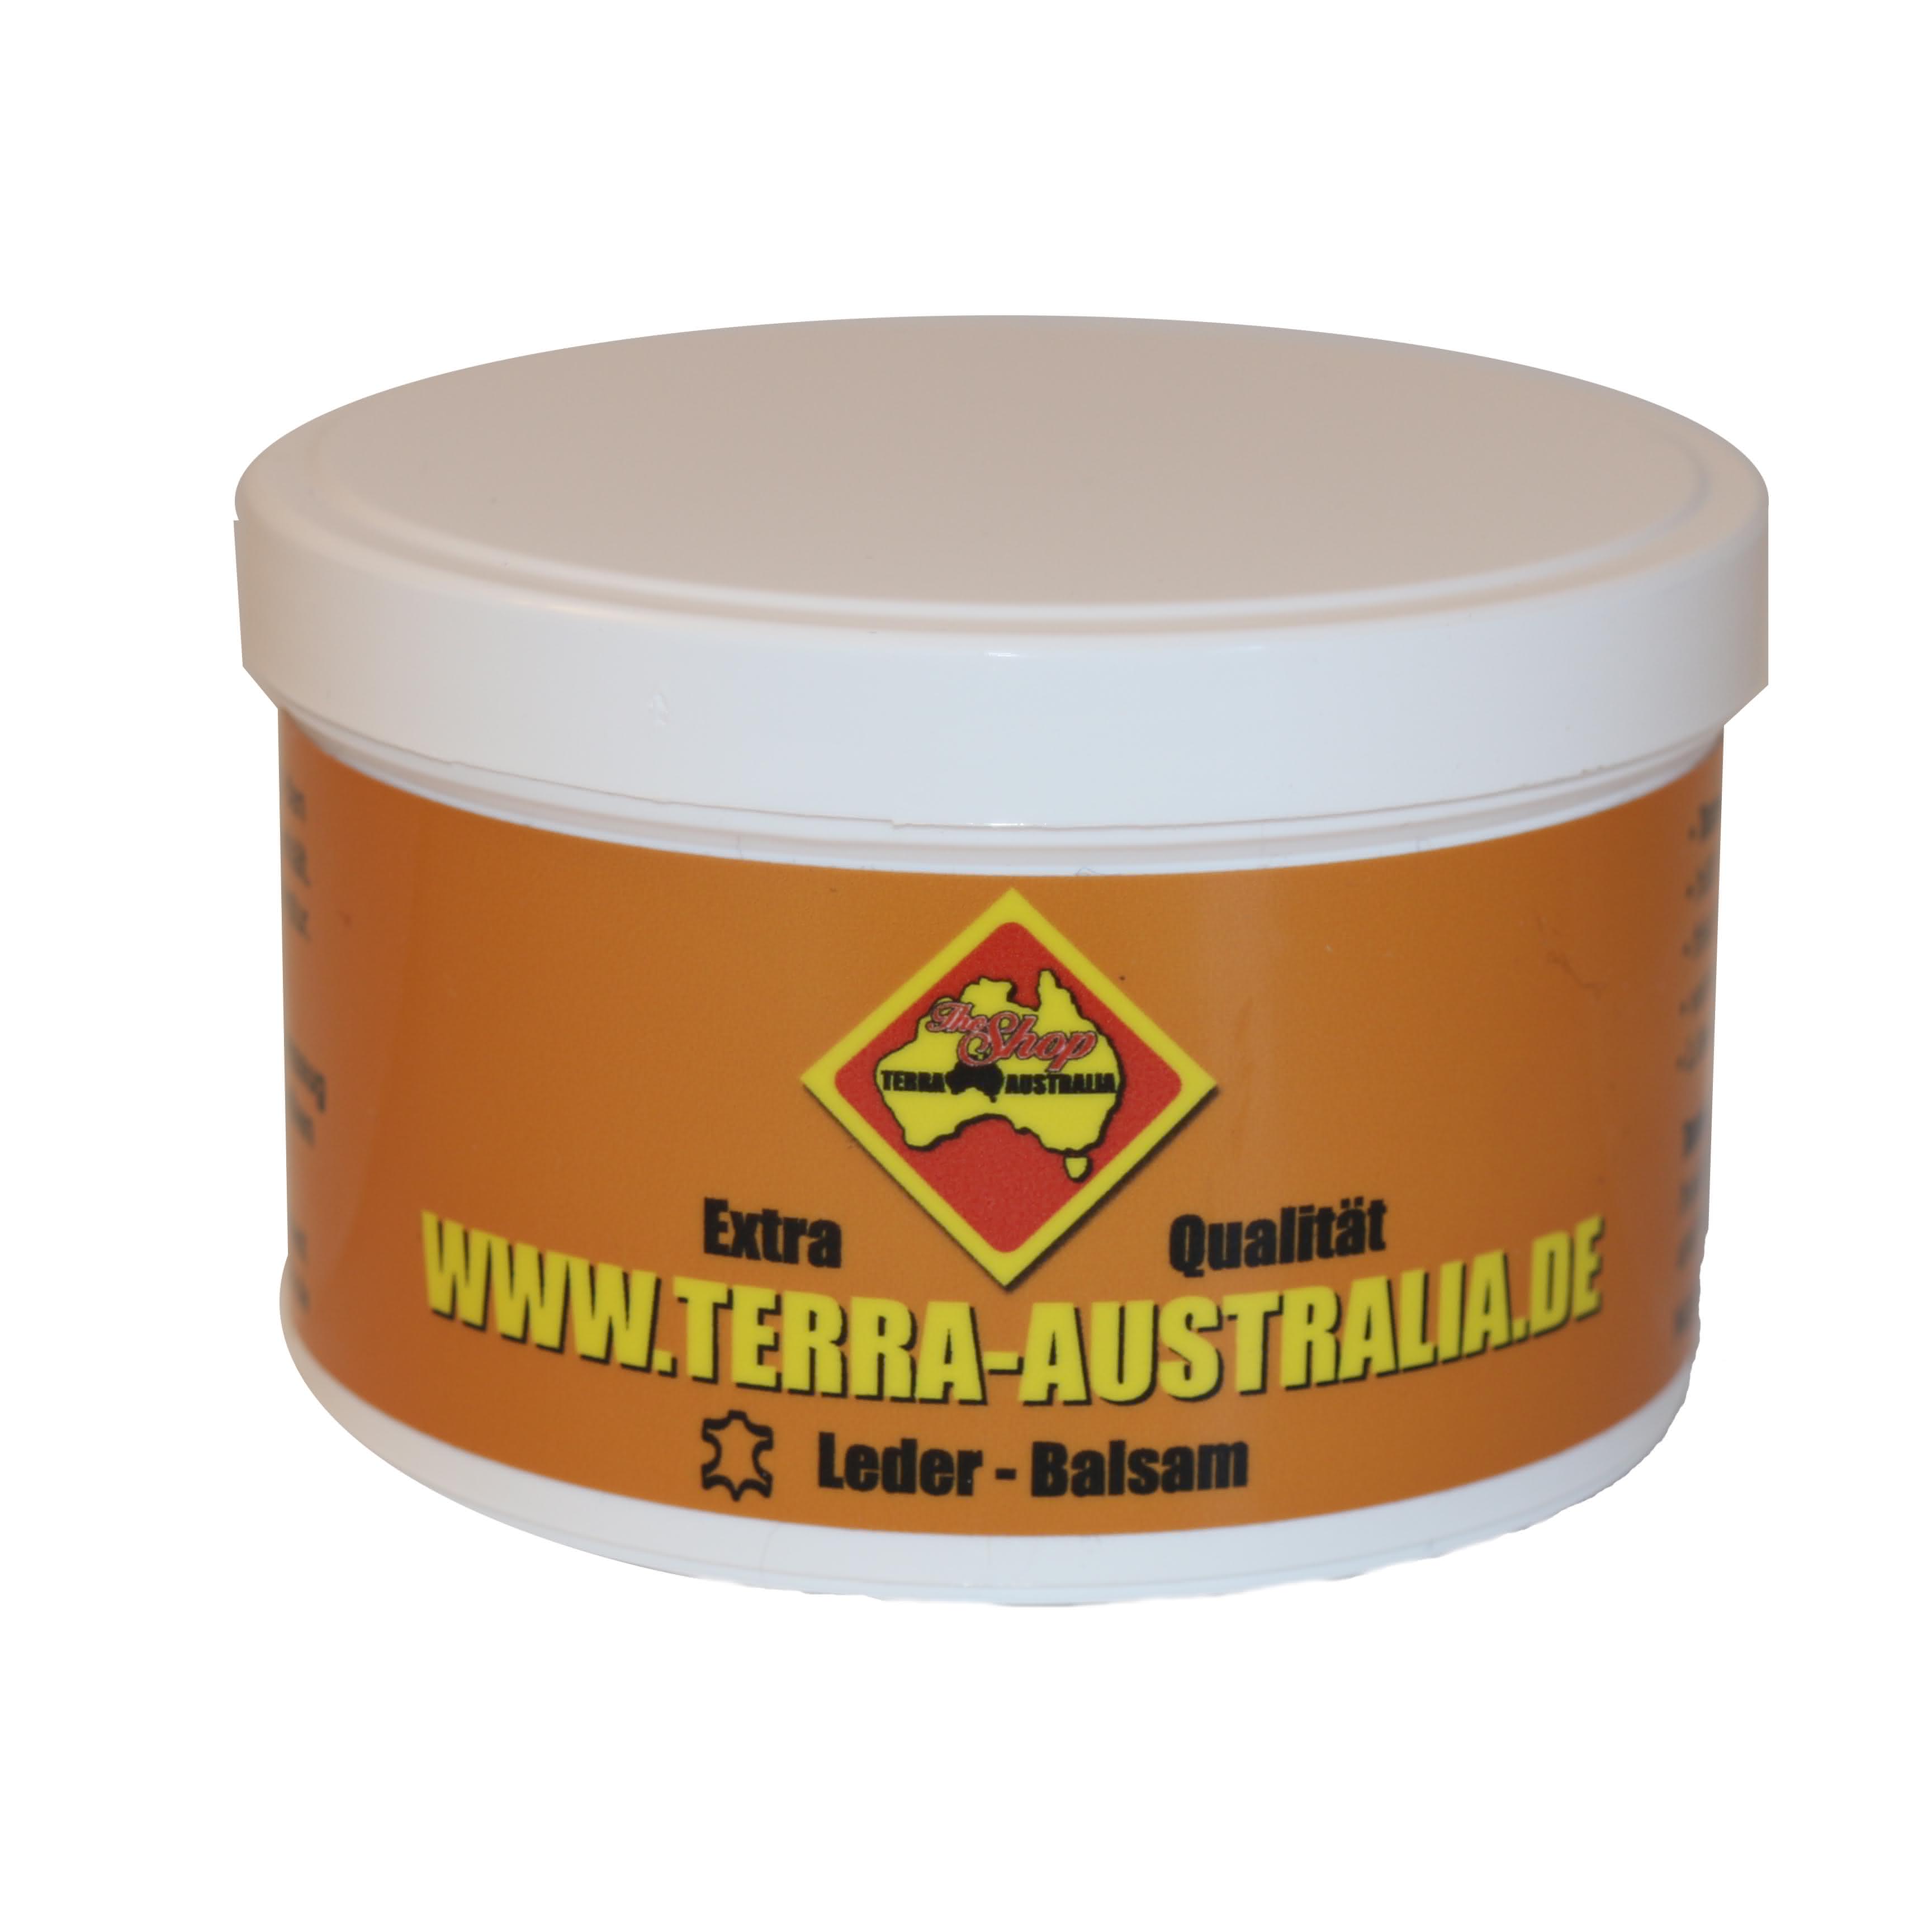 Terra Australia Leder-Balsam 250ml